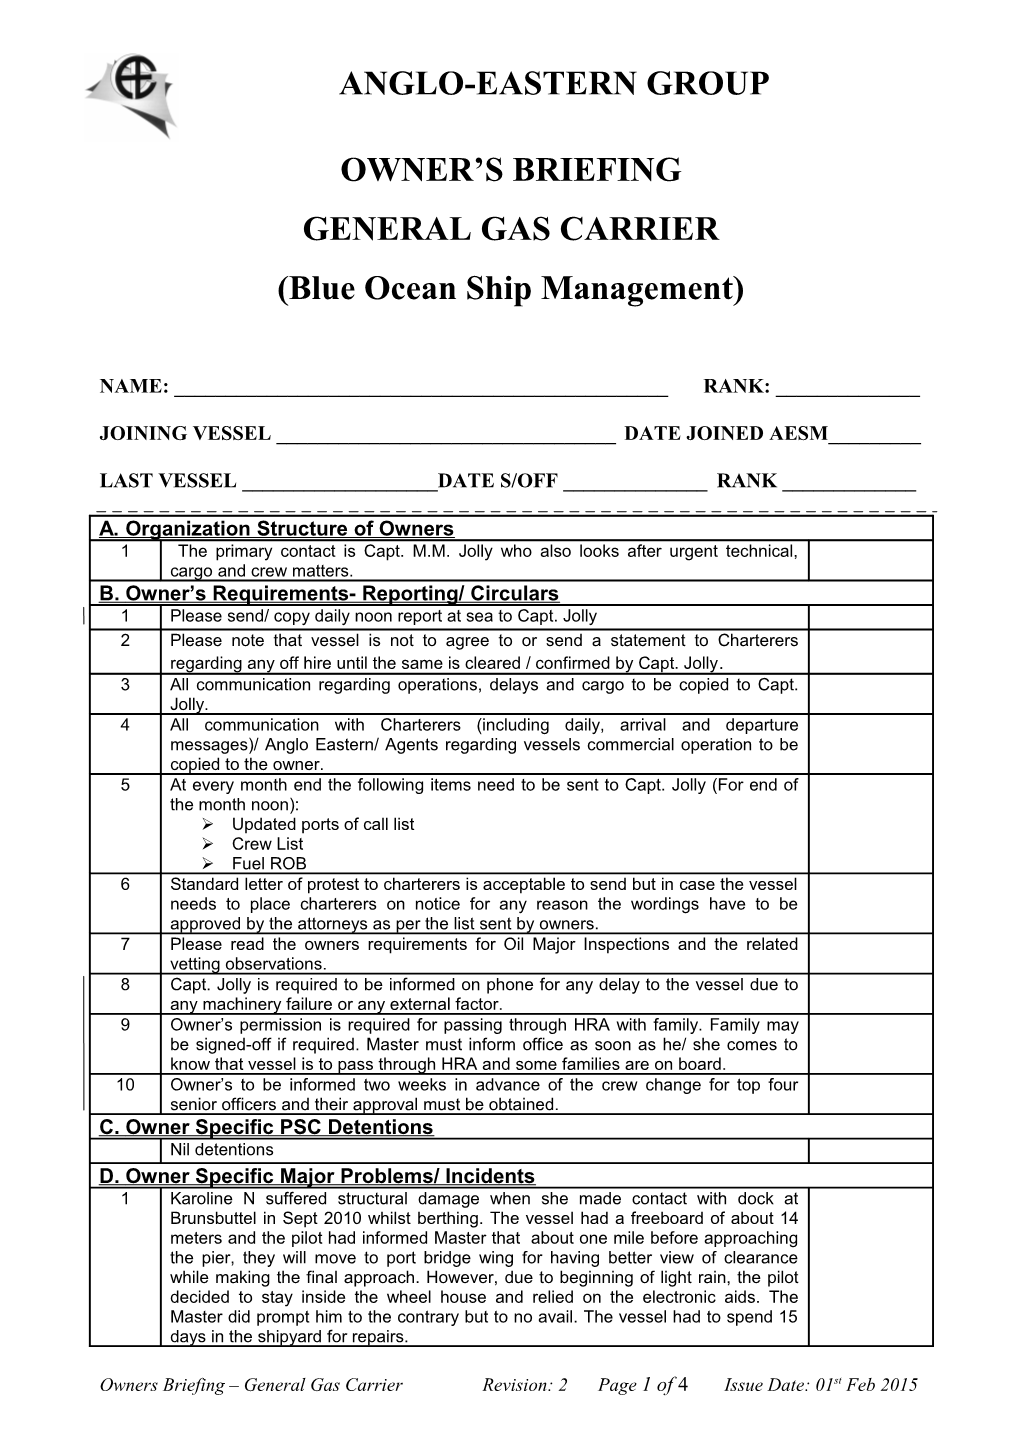 Owners Briefing- General Gas Carrier (Blue Ocean)